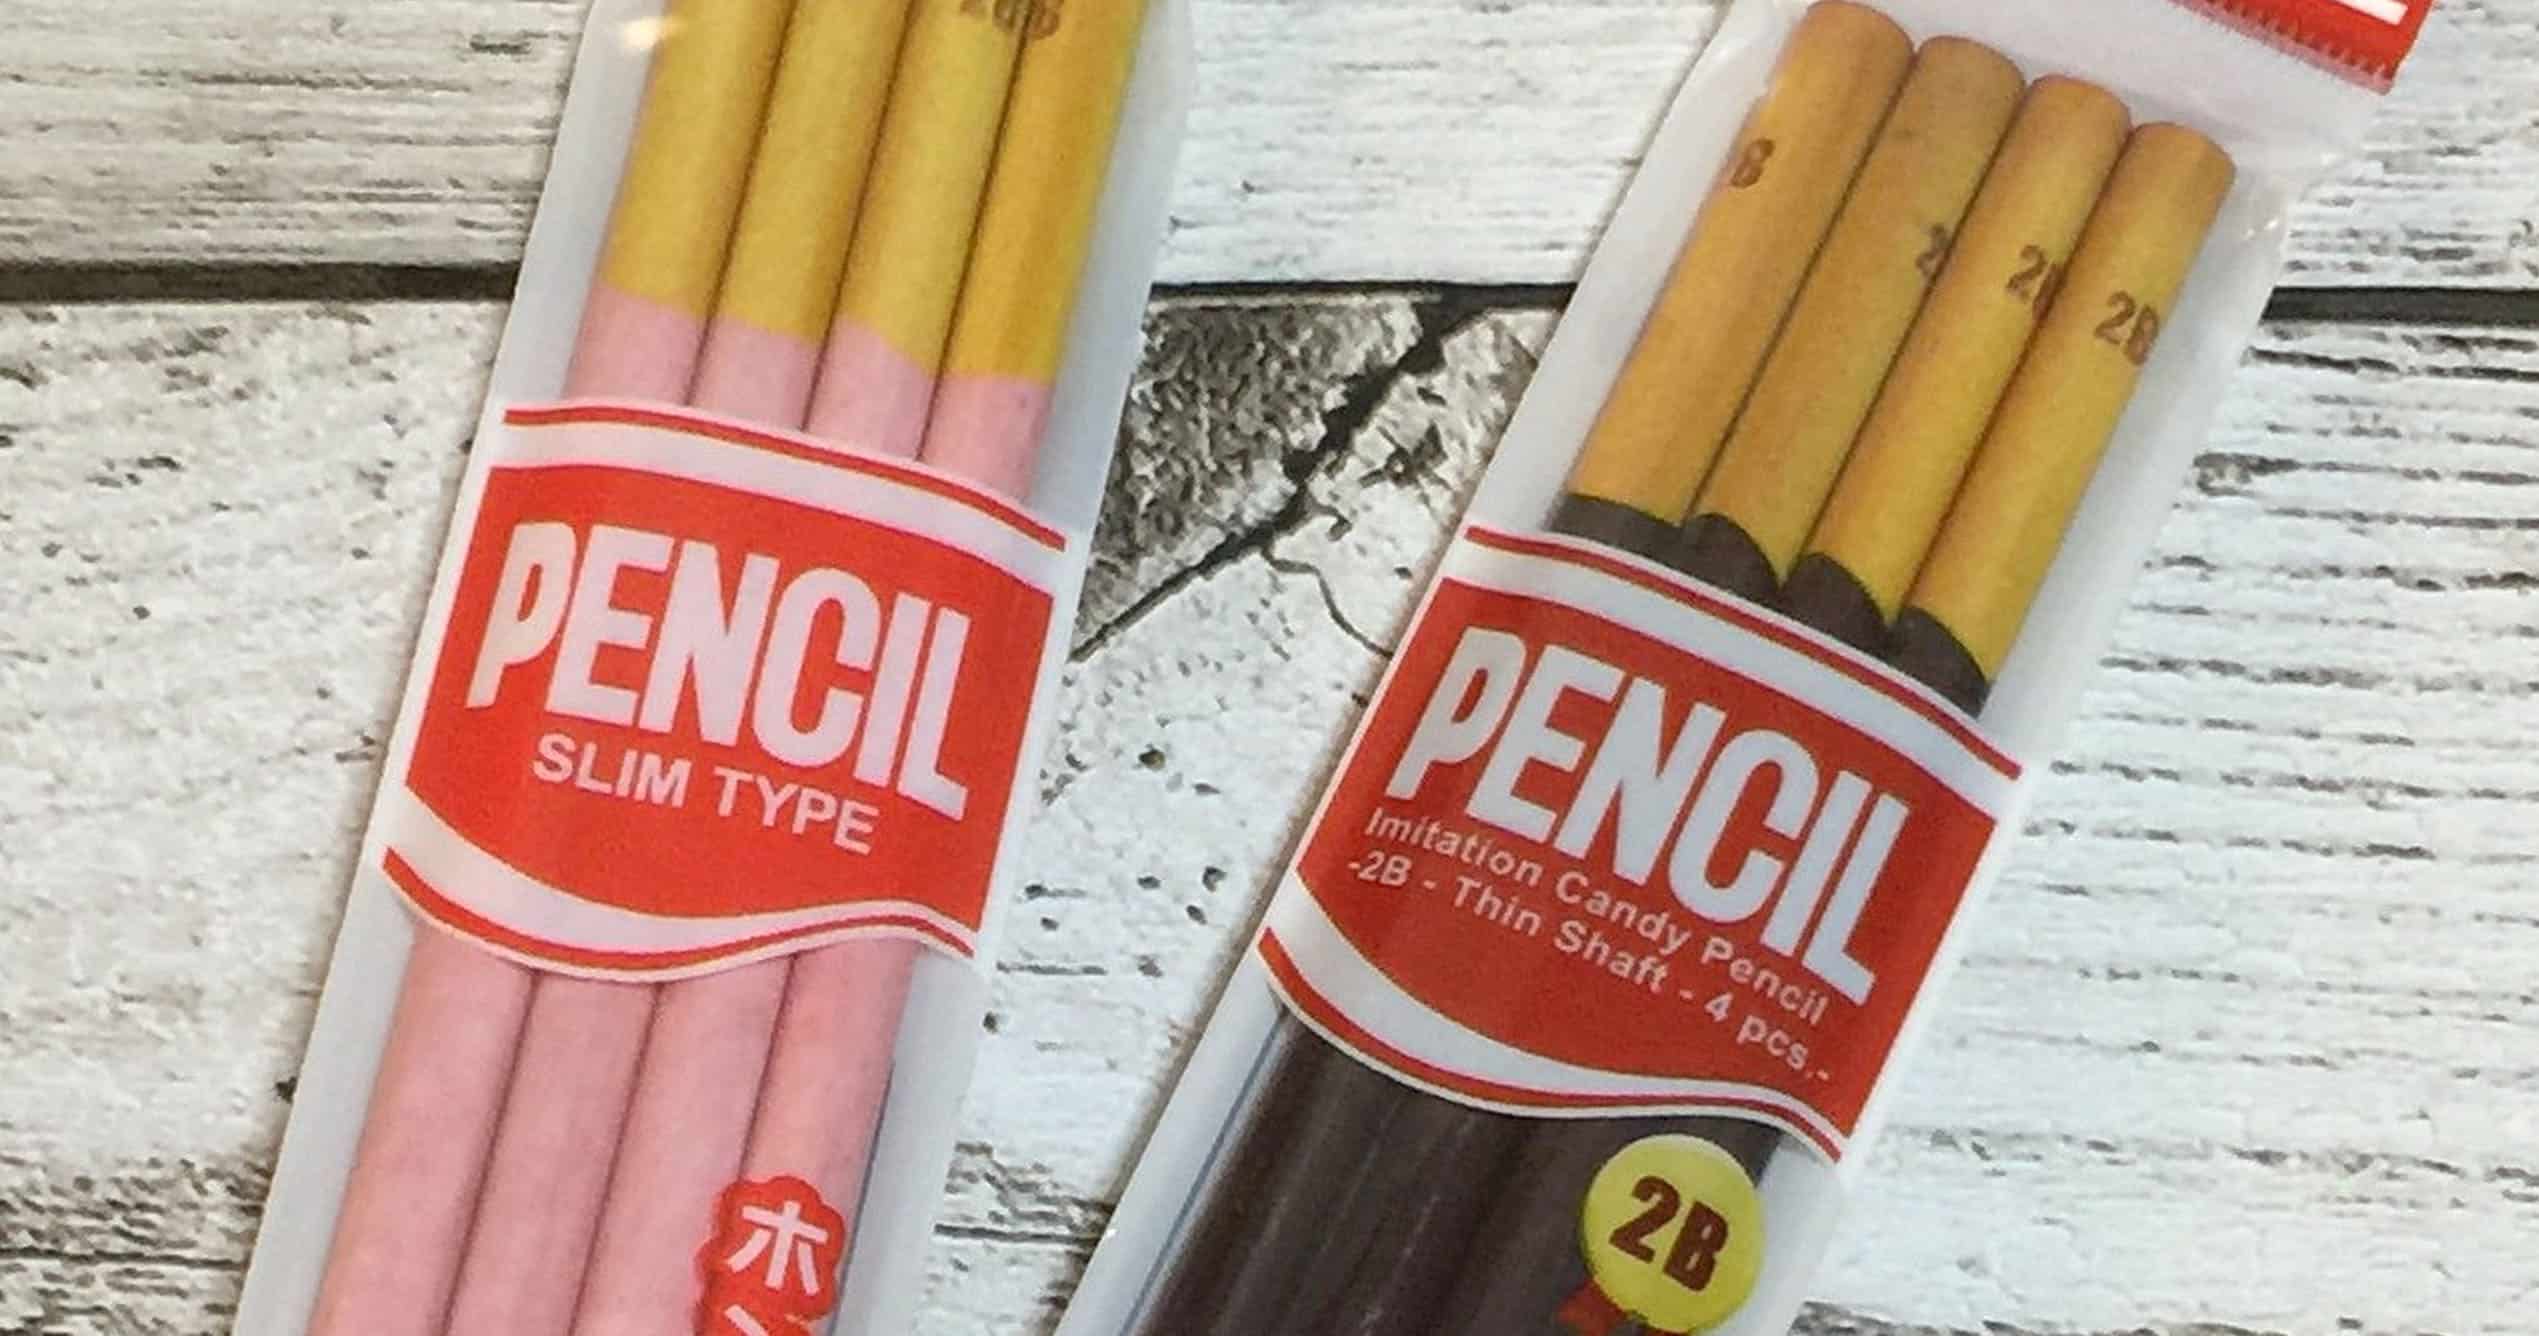 Pocky Pencils